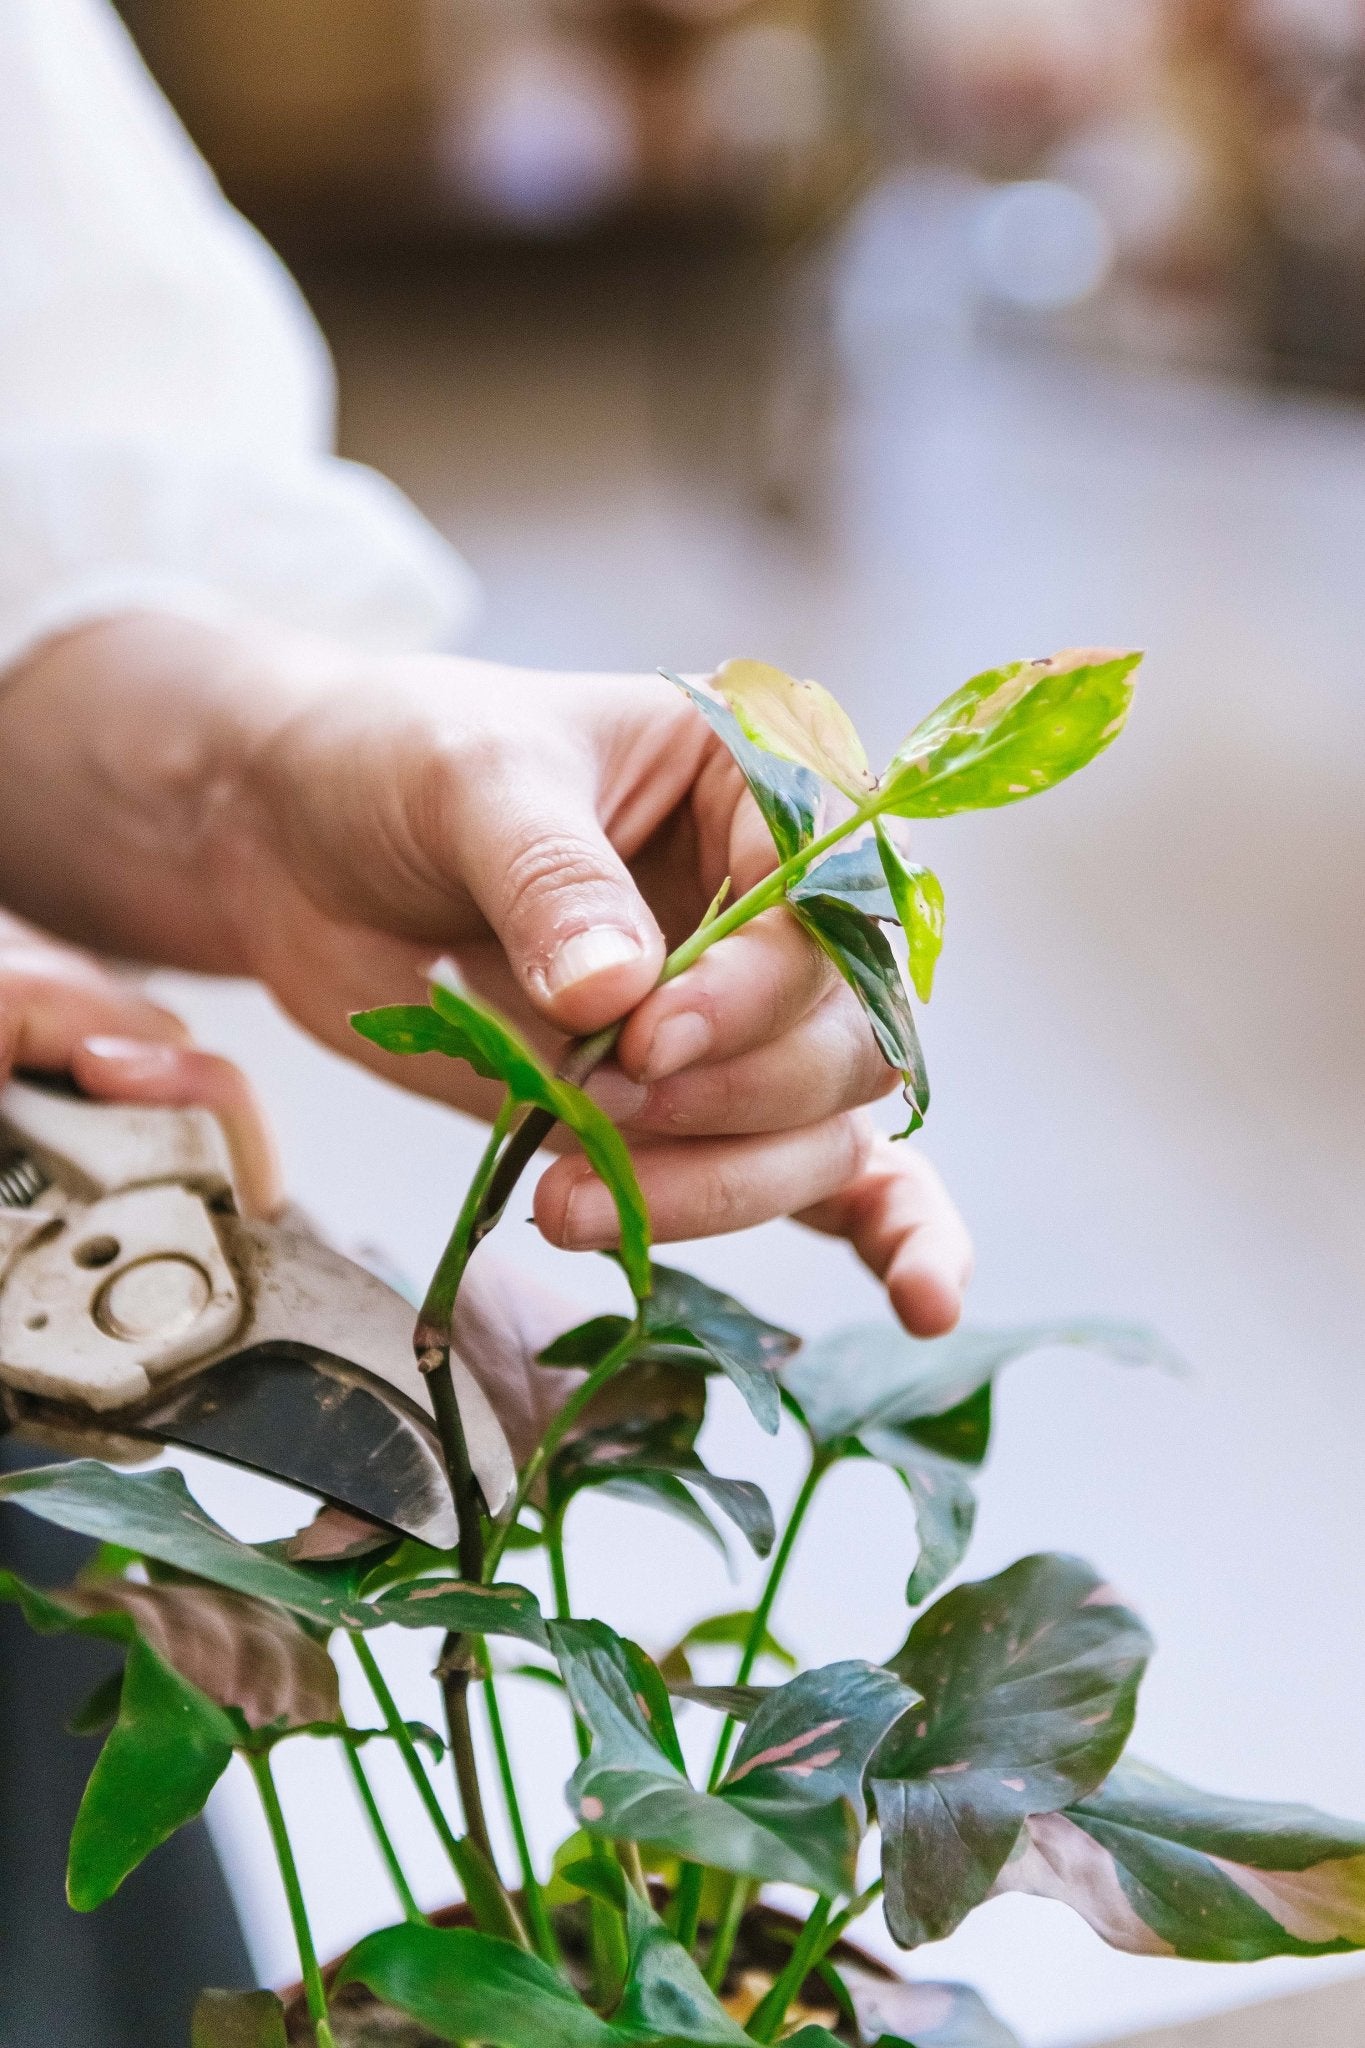 Comment prélever des boutures de plantes d'intérieur ?